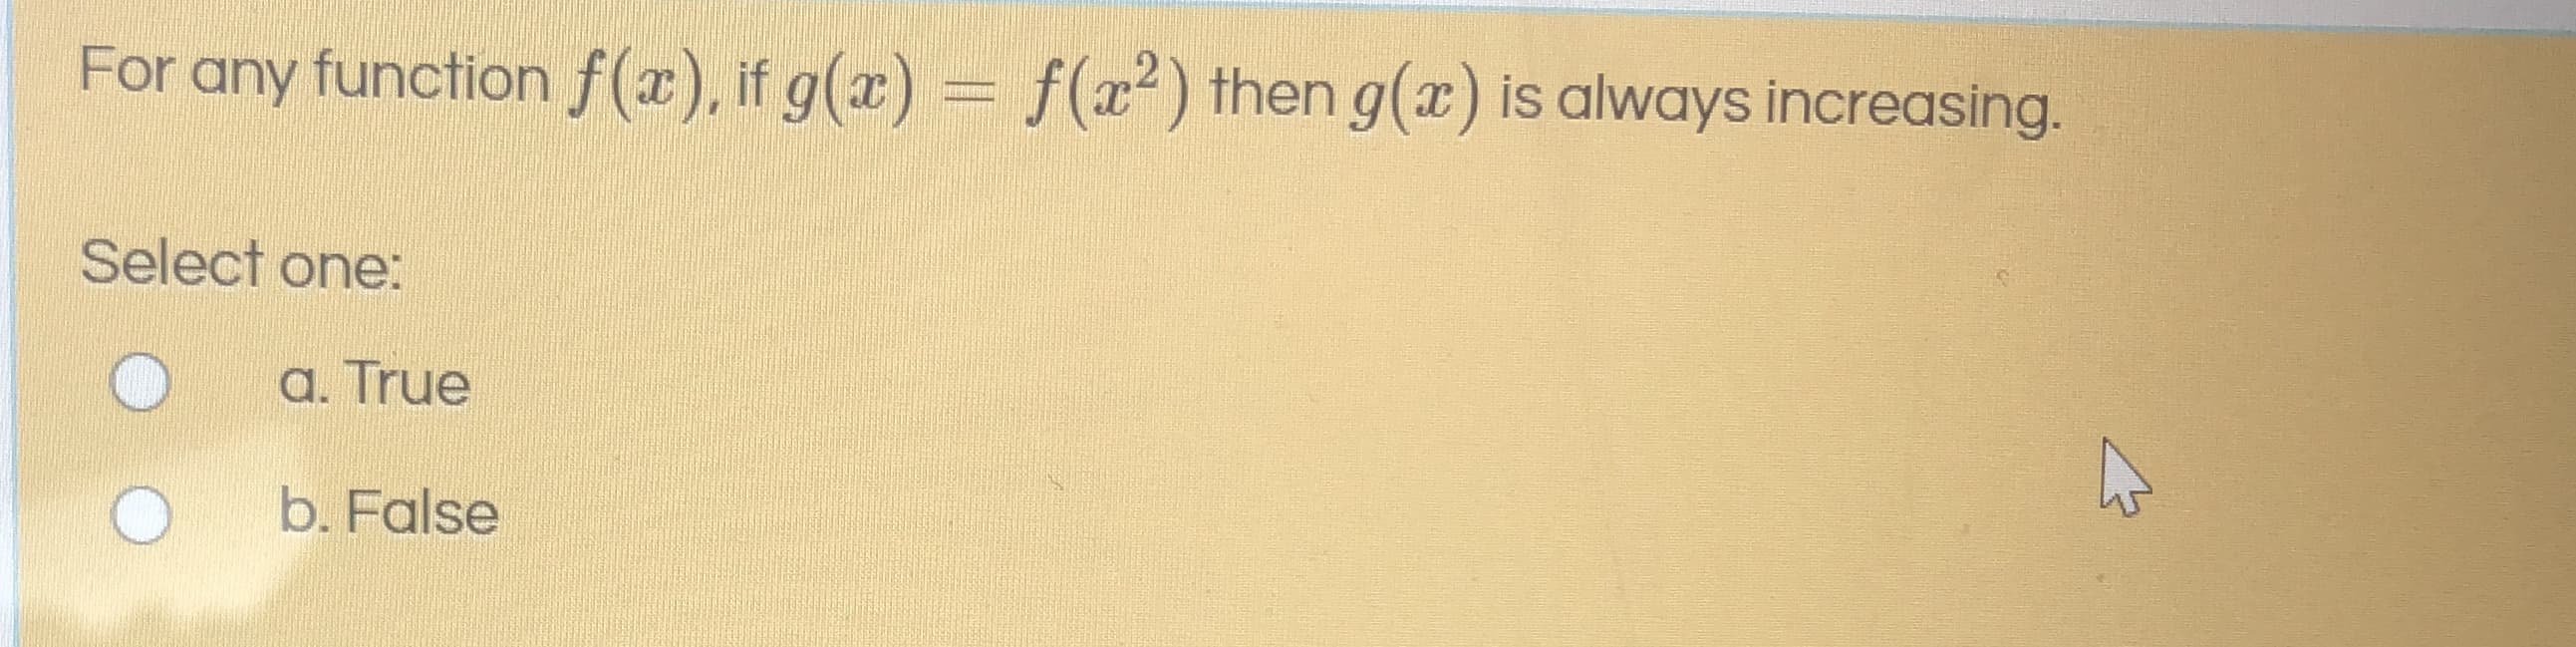 For any function f(x), if g(x) = f(x²) then g(x) is always increasing.
Select one:
a. True
b. False
